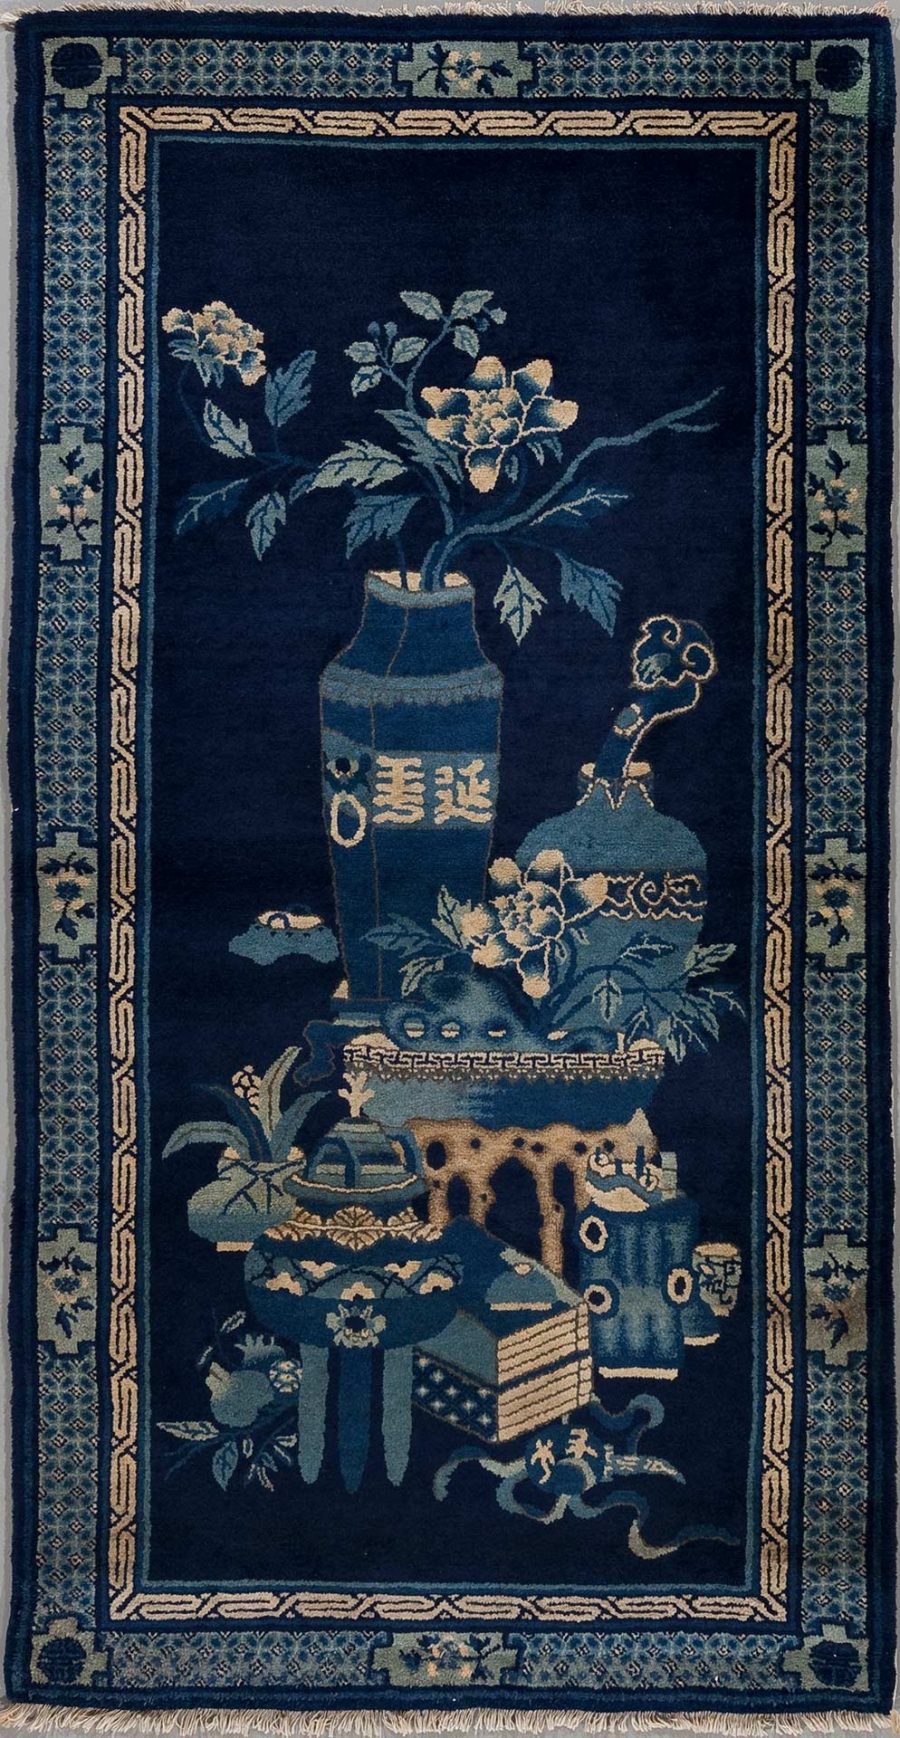 Antiker handgeknüpfter Teppich mit asiatischem Design, zeigt auf dunkelblauem Grund traditionelle Motive wie Vasen, Blumen, Schriftzeichen und dekorative Bordüren.